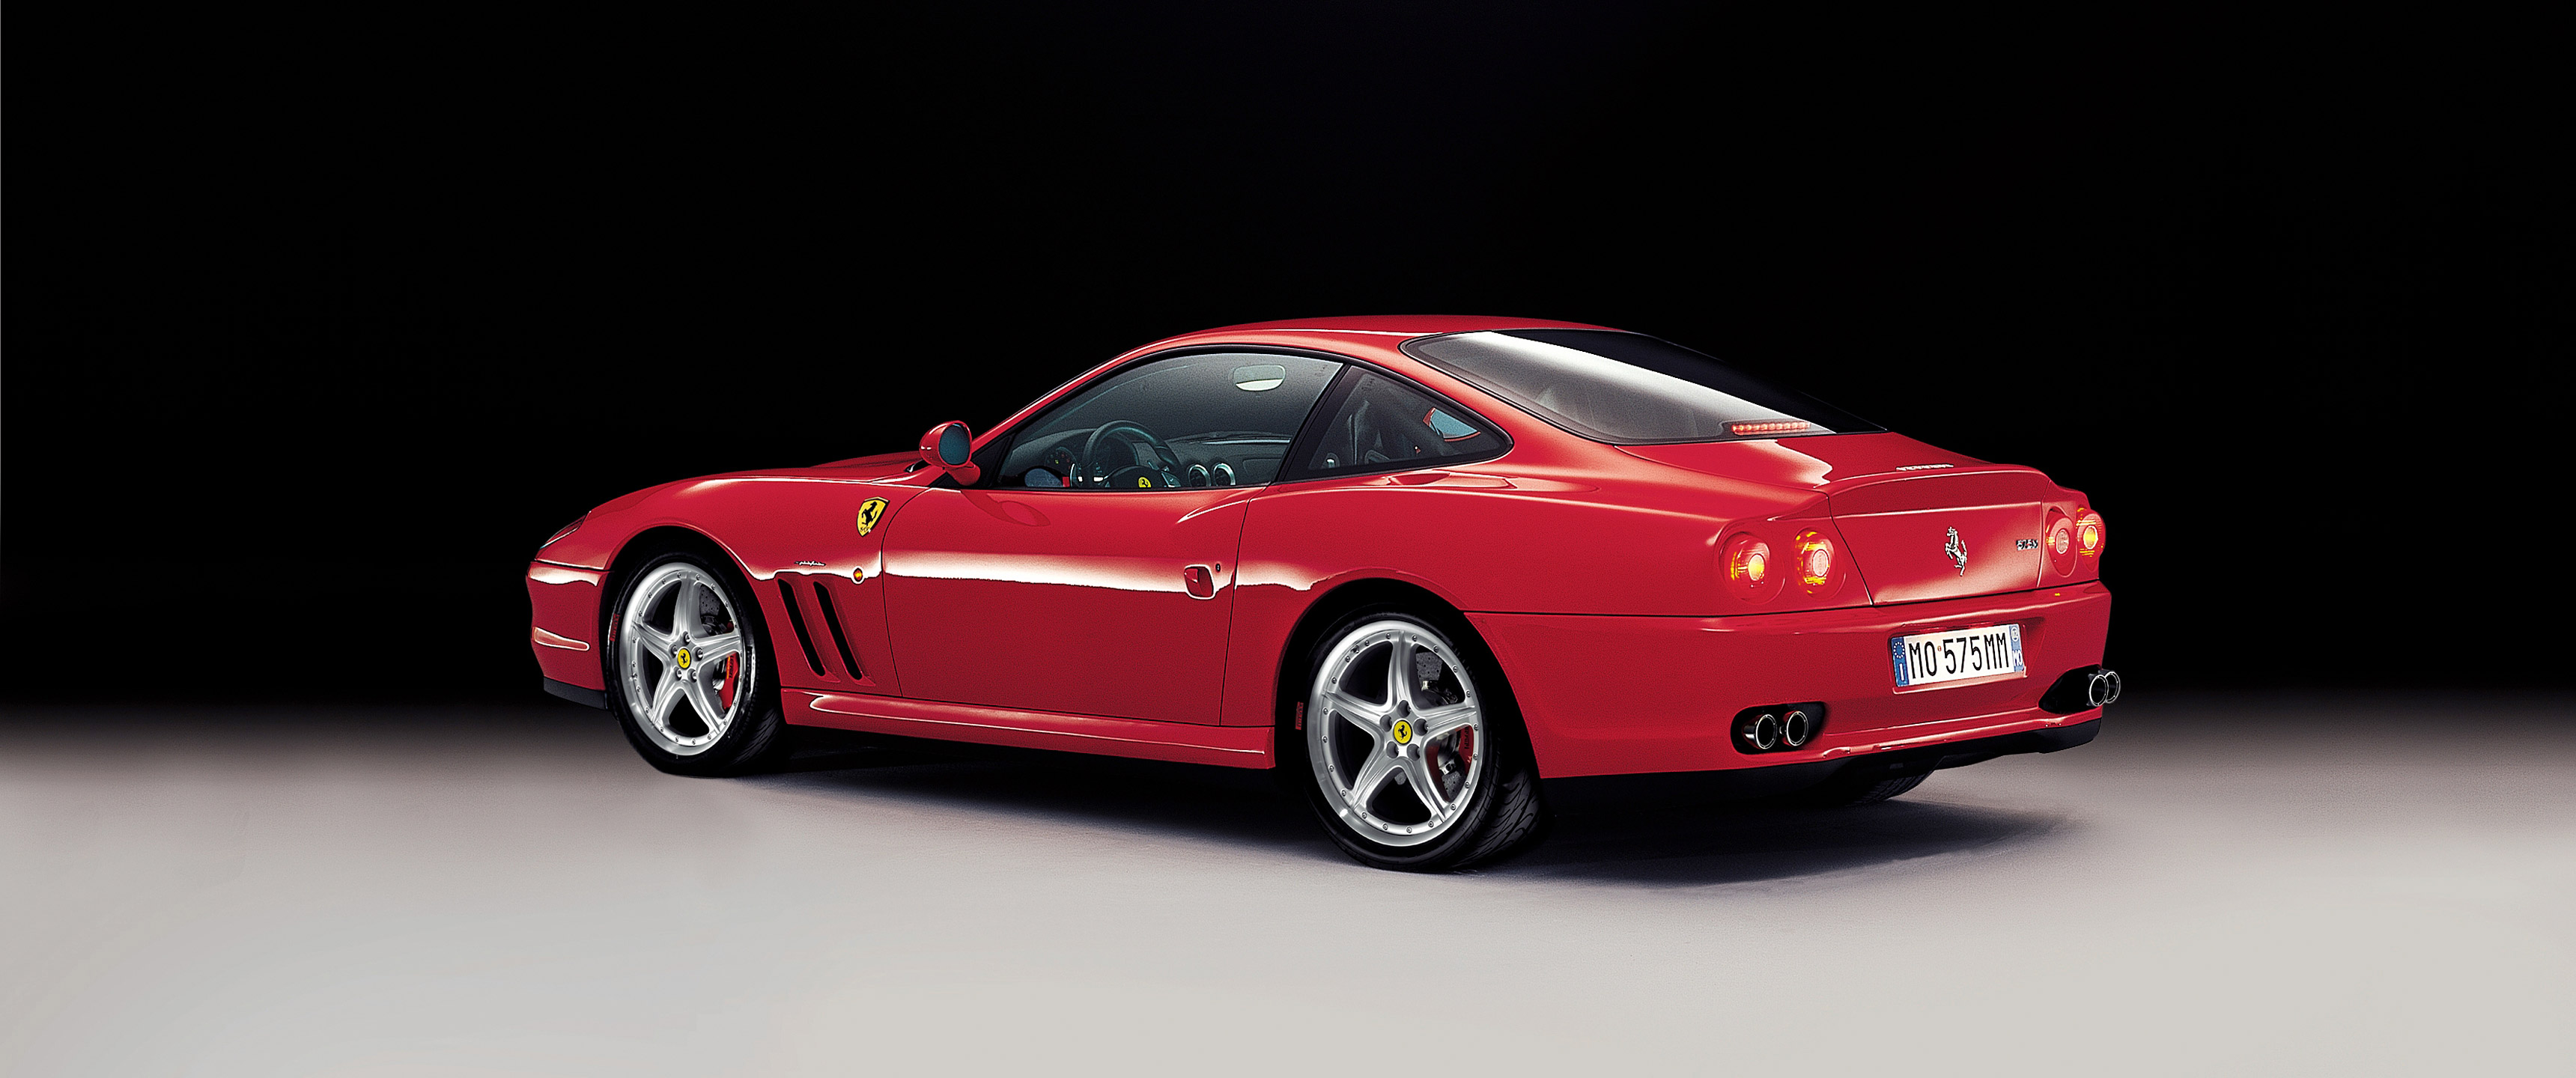  2002 Ferrari 575M Maranello Wallpaper.